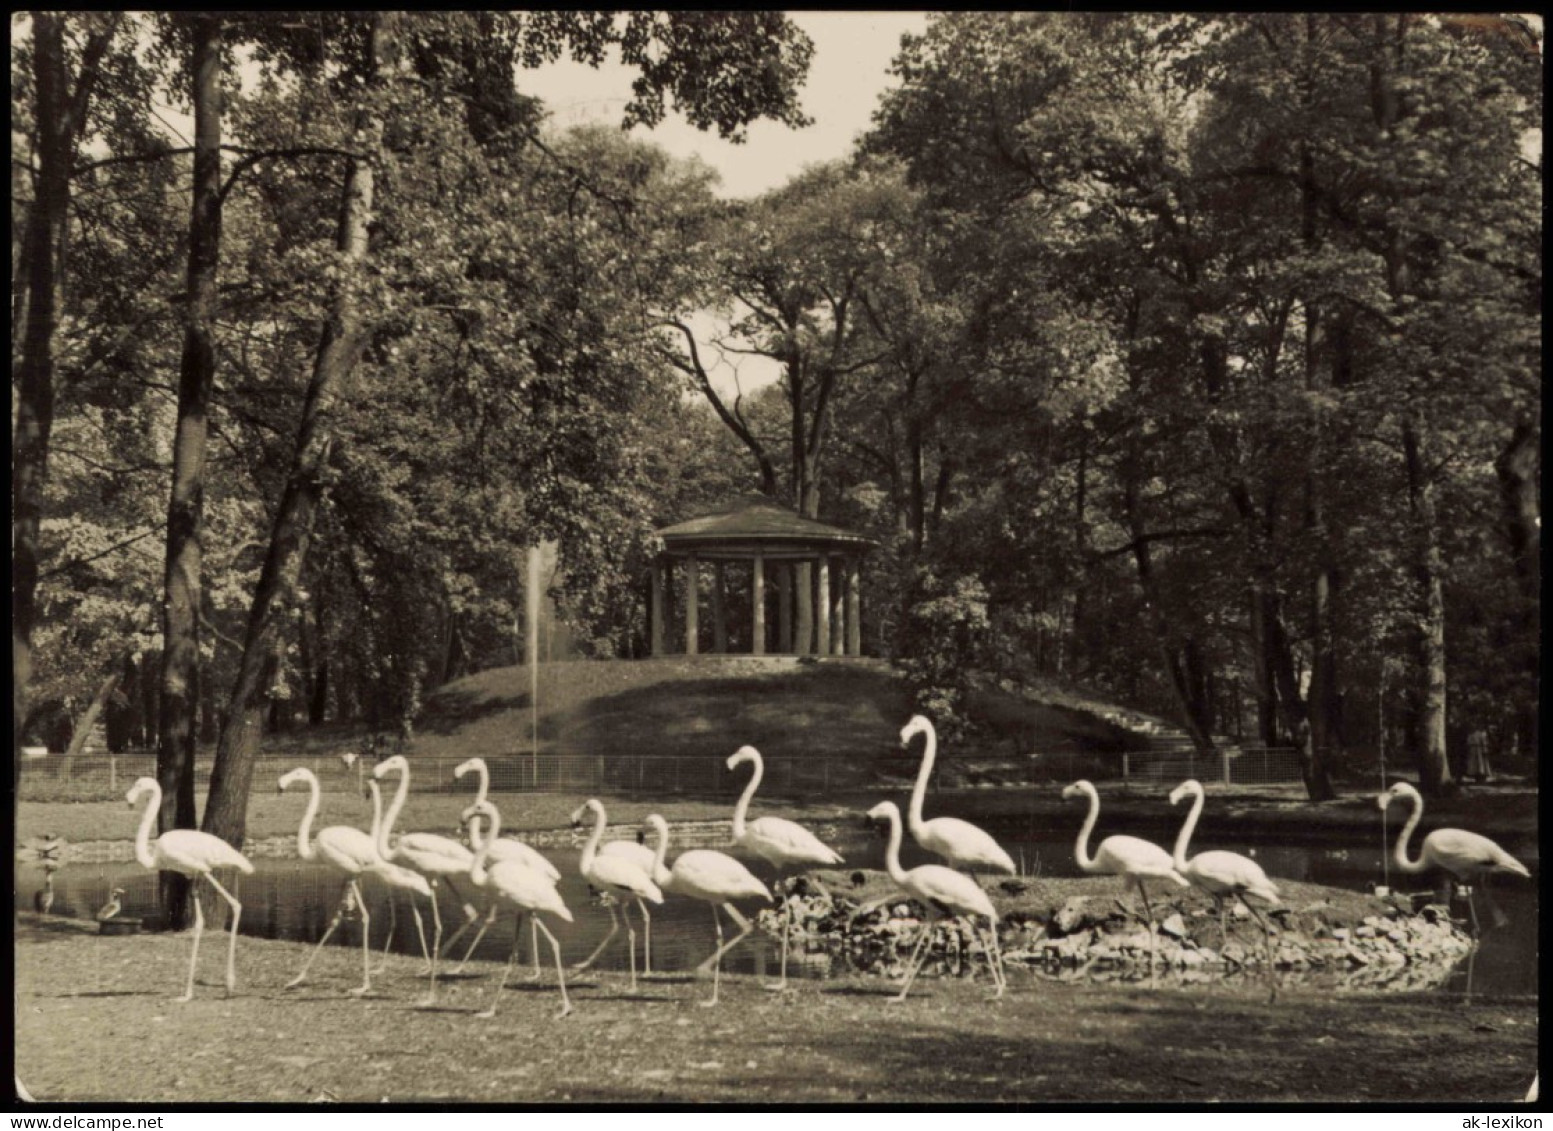 Mitte-Berlin DDR AK Tierpark Flamingos Vor Dem Lenné-Tempel 1957 - Mitte